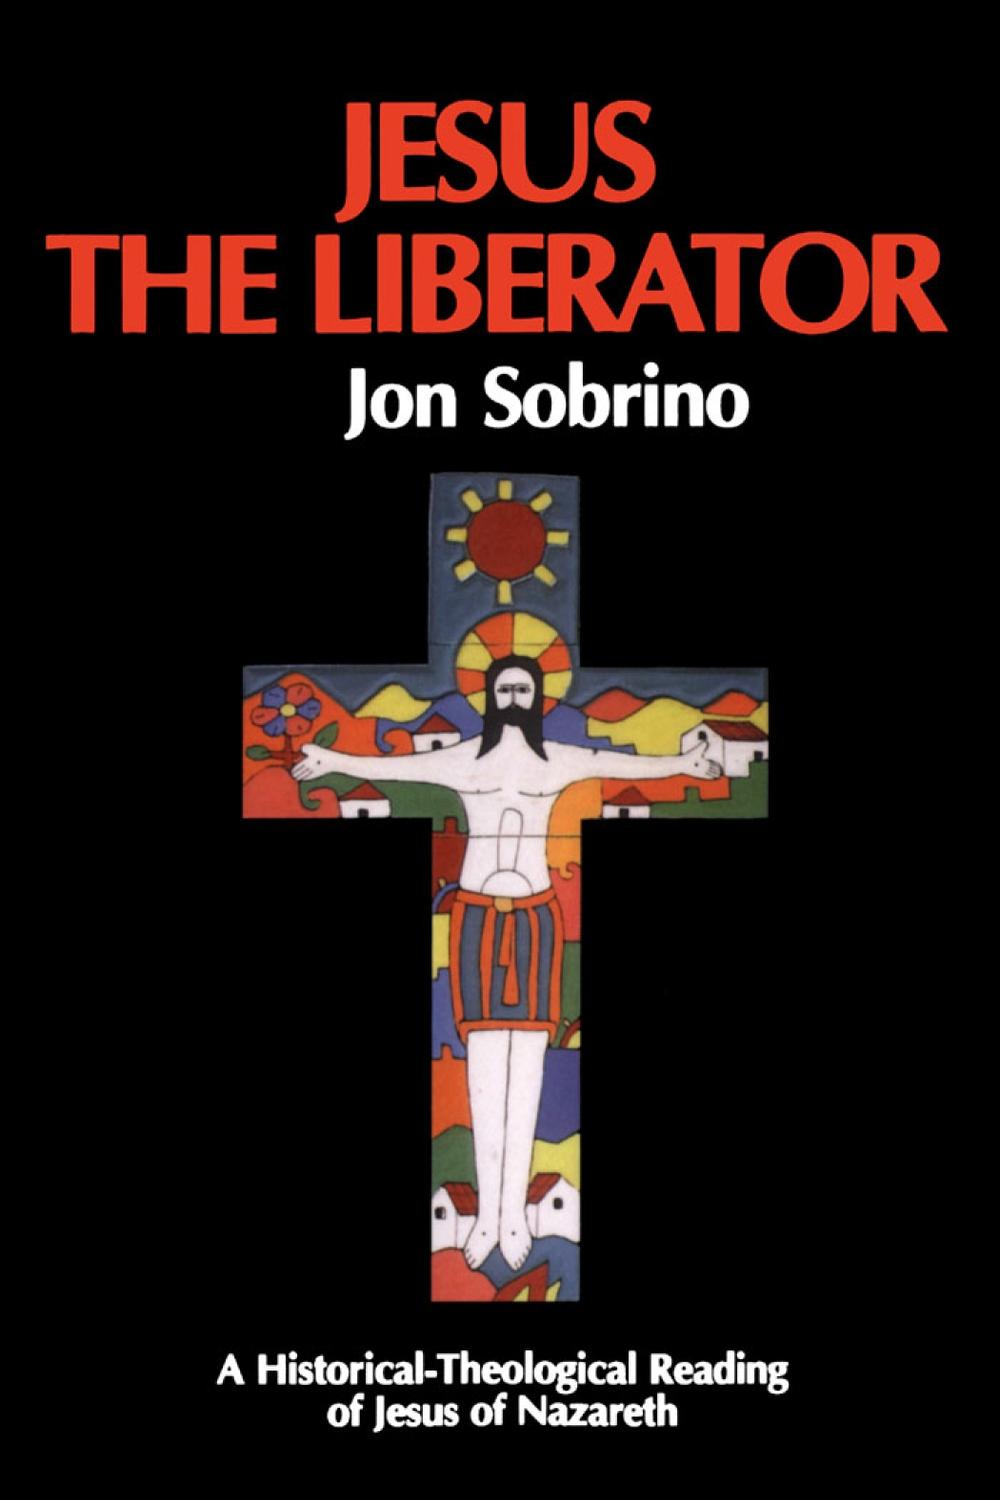 Jesus the Liberator - Jon Sobrino